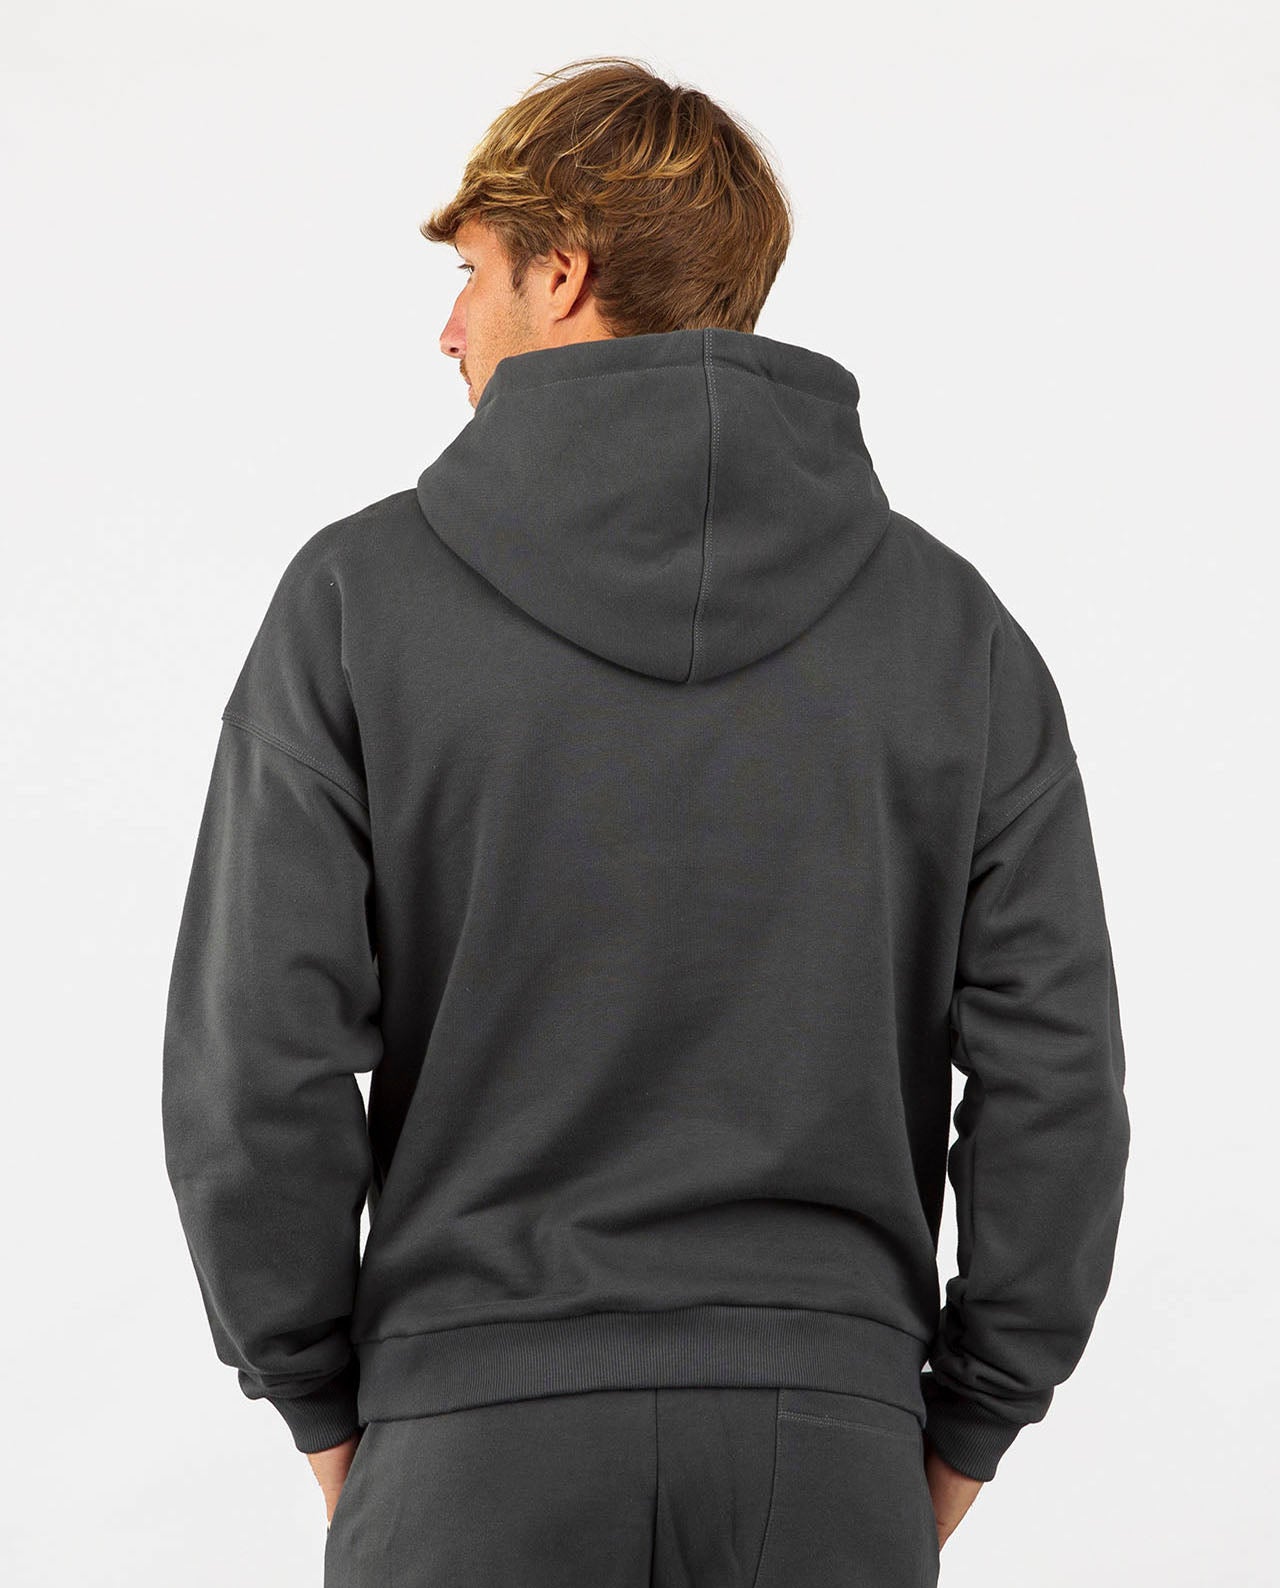 marché commun noyoco sweatshirt hoodie capuche homme coton biologique eco-responsable anthracite